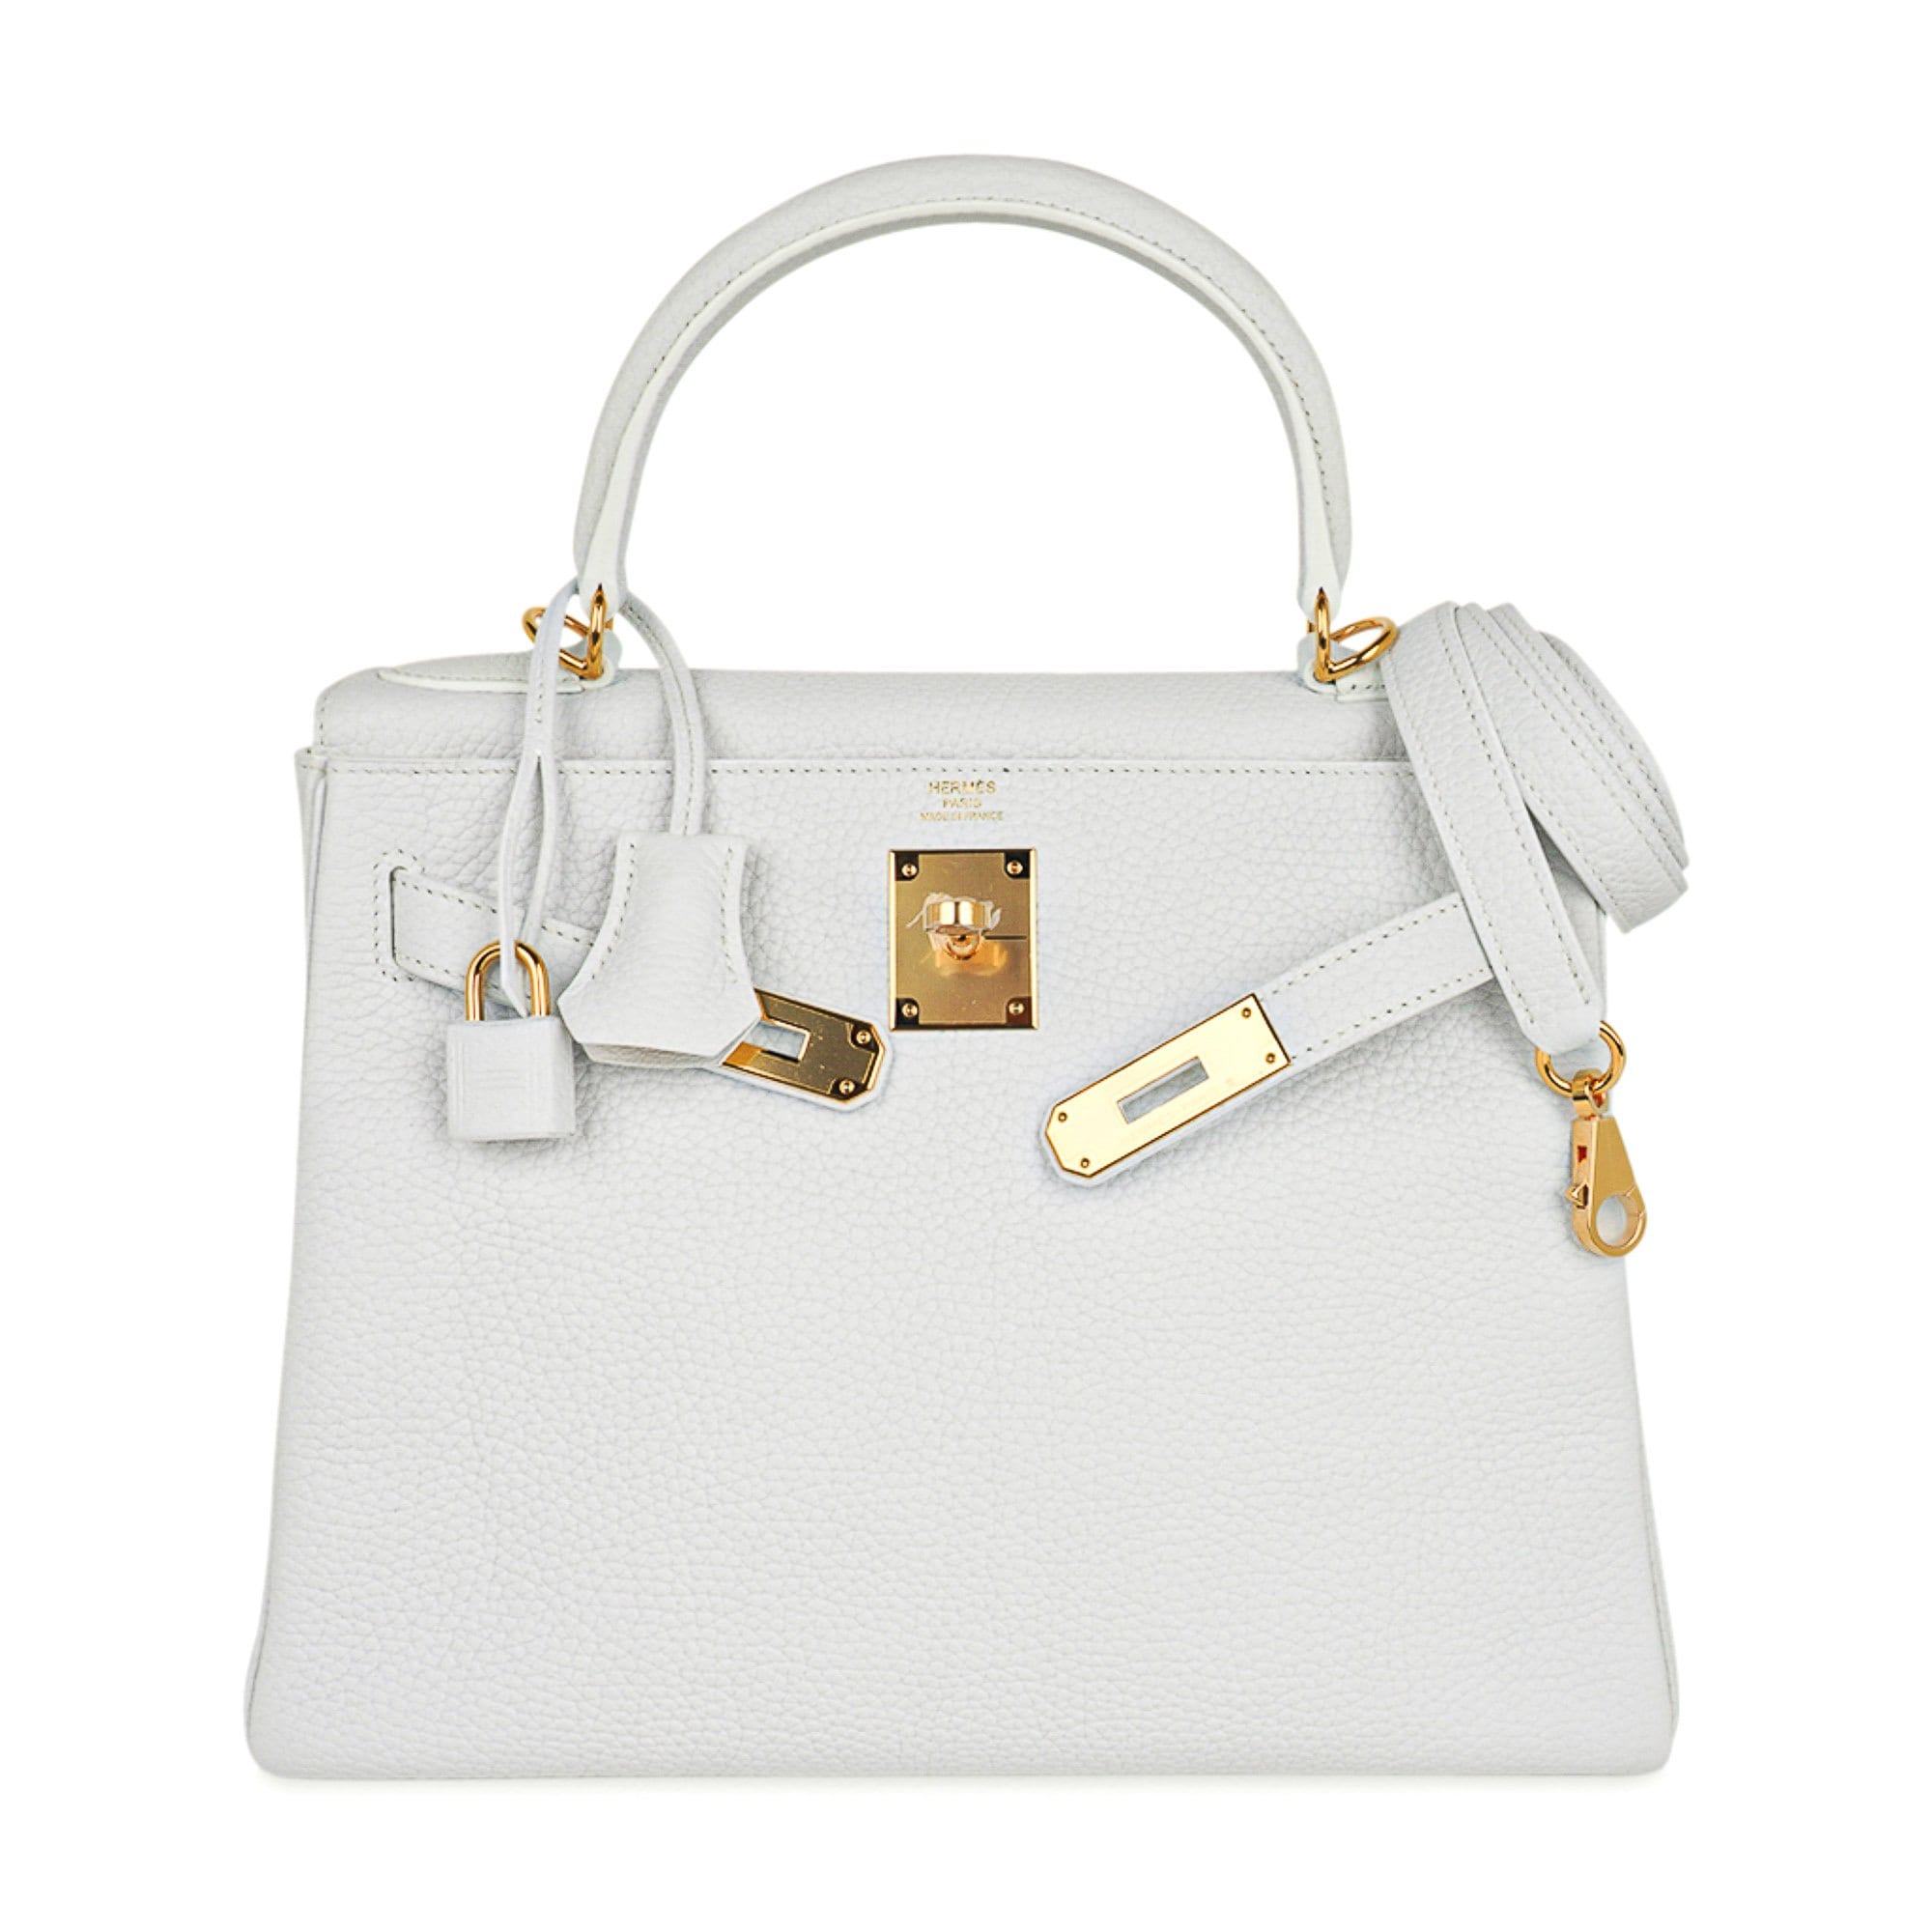 Hermes Kelly white bag  Fashion, Hermes kelly bag, Hermes bags